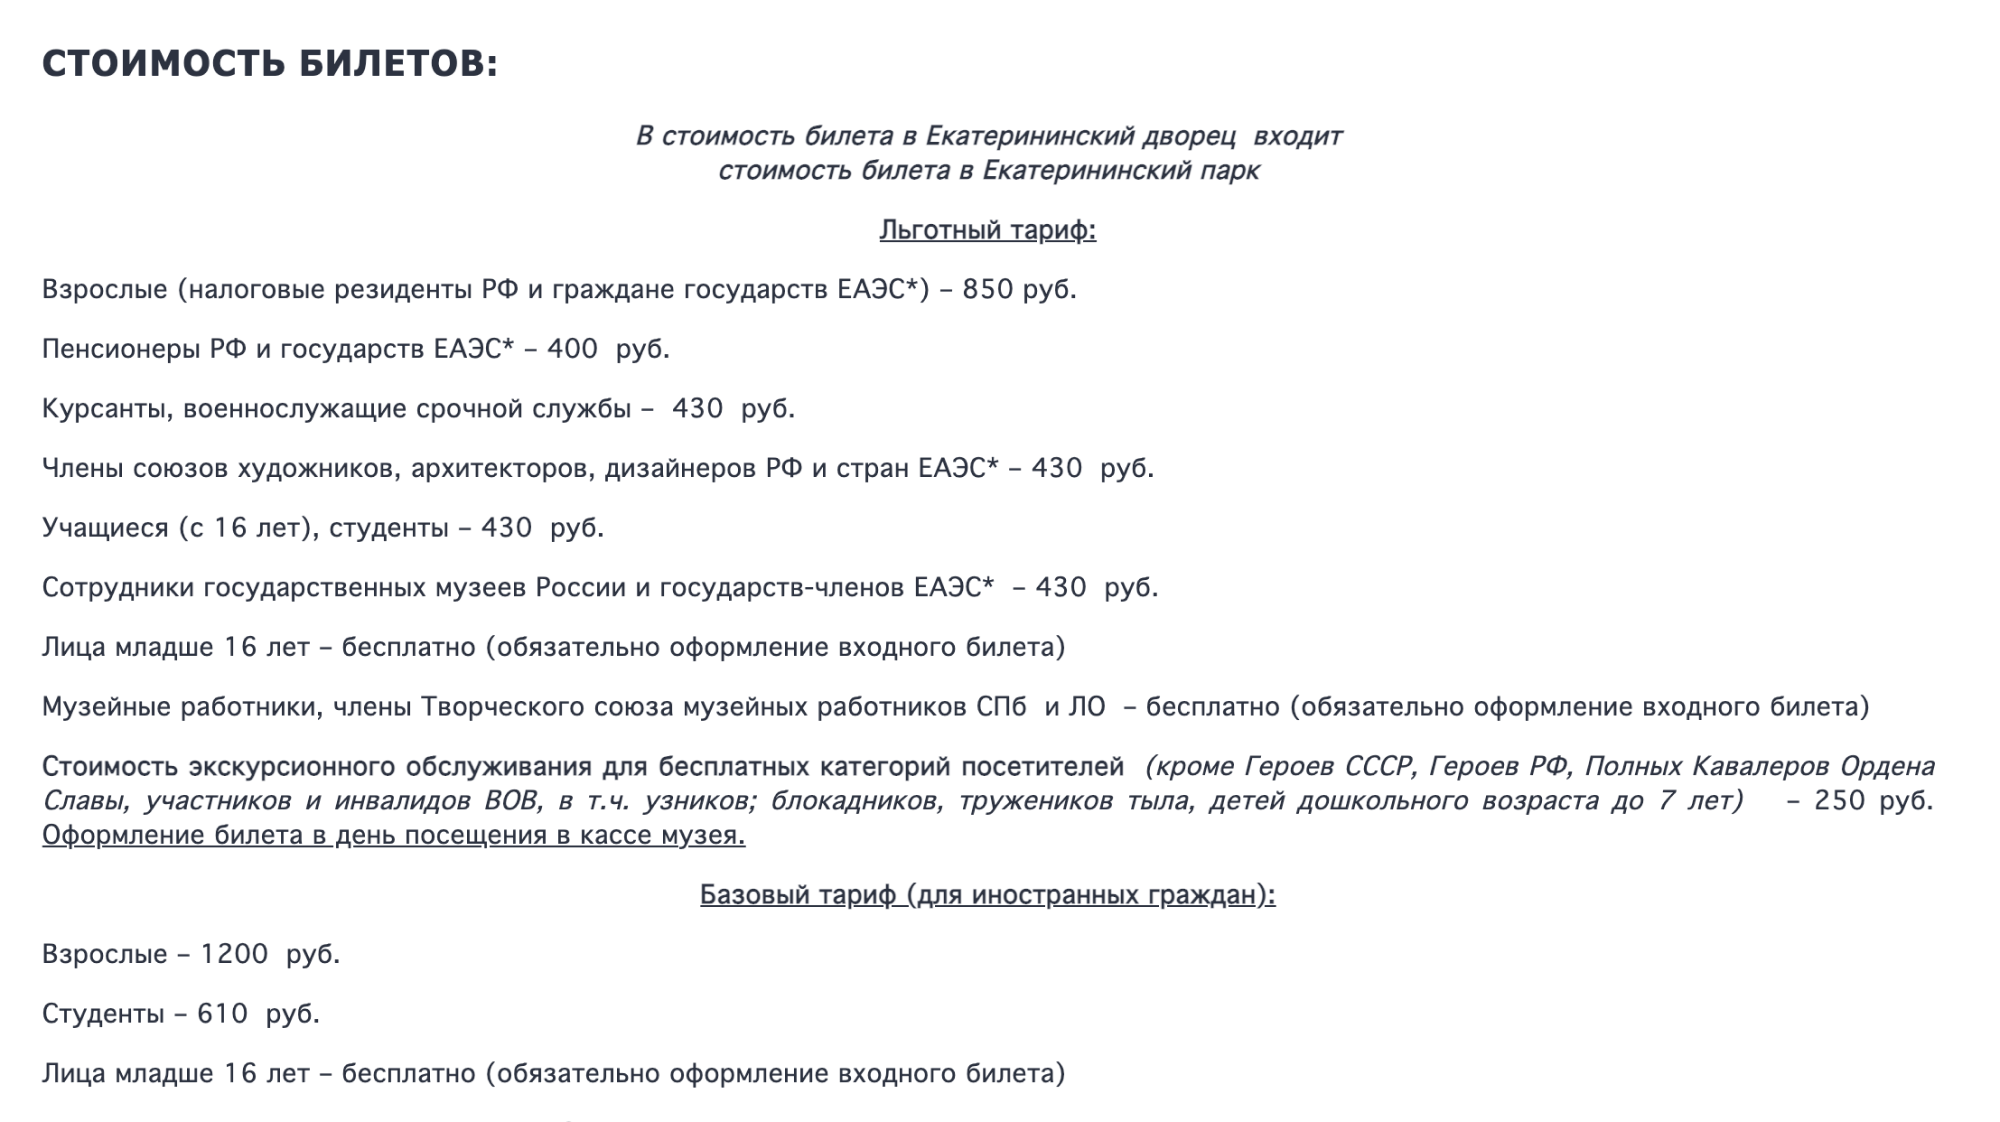 Стоимость билетов в Екатерининский дворец. Источник: tzar.ru